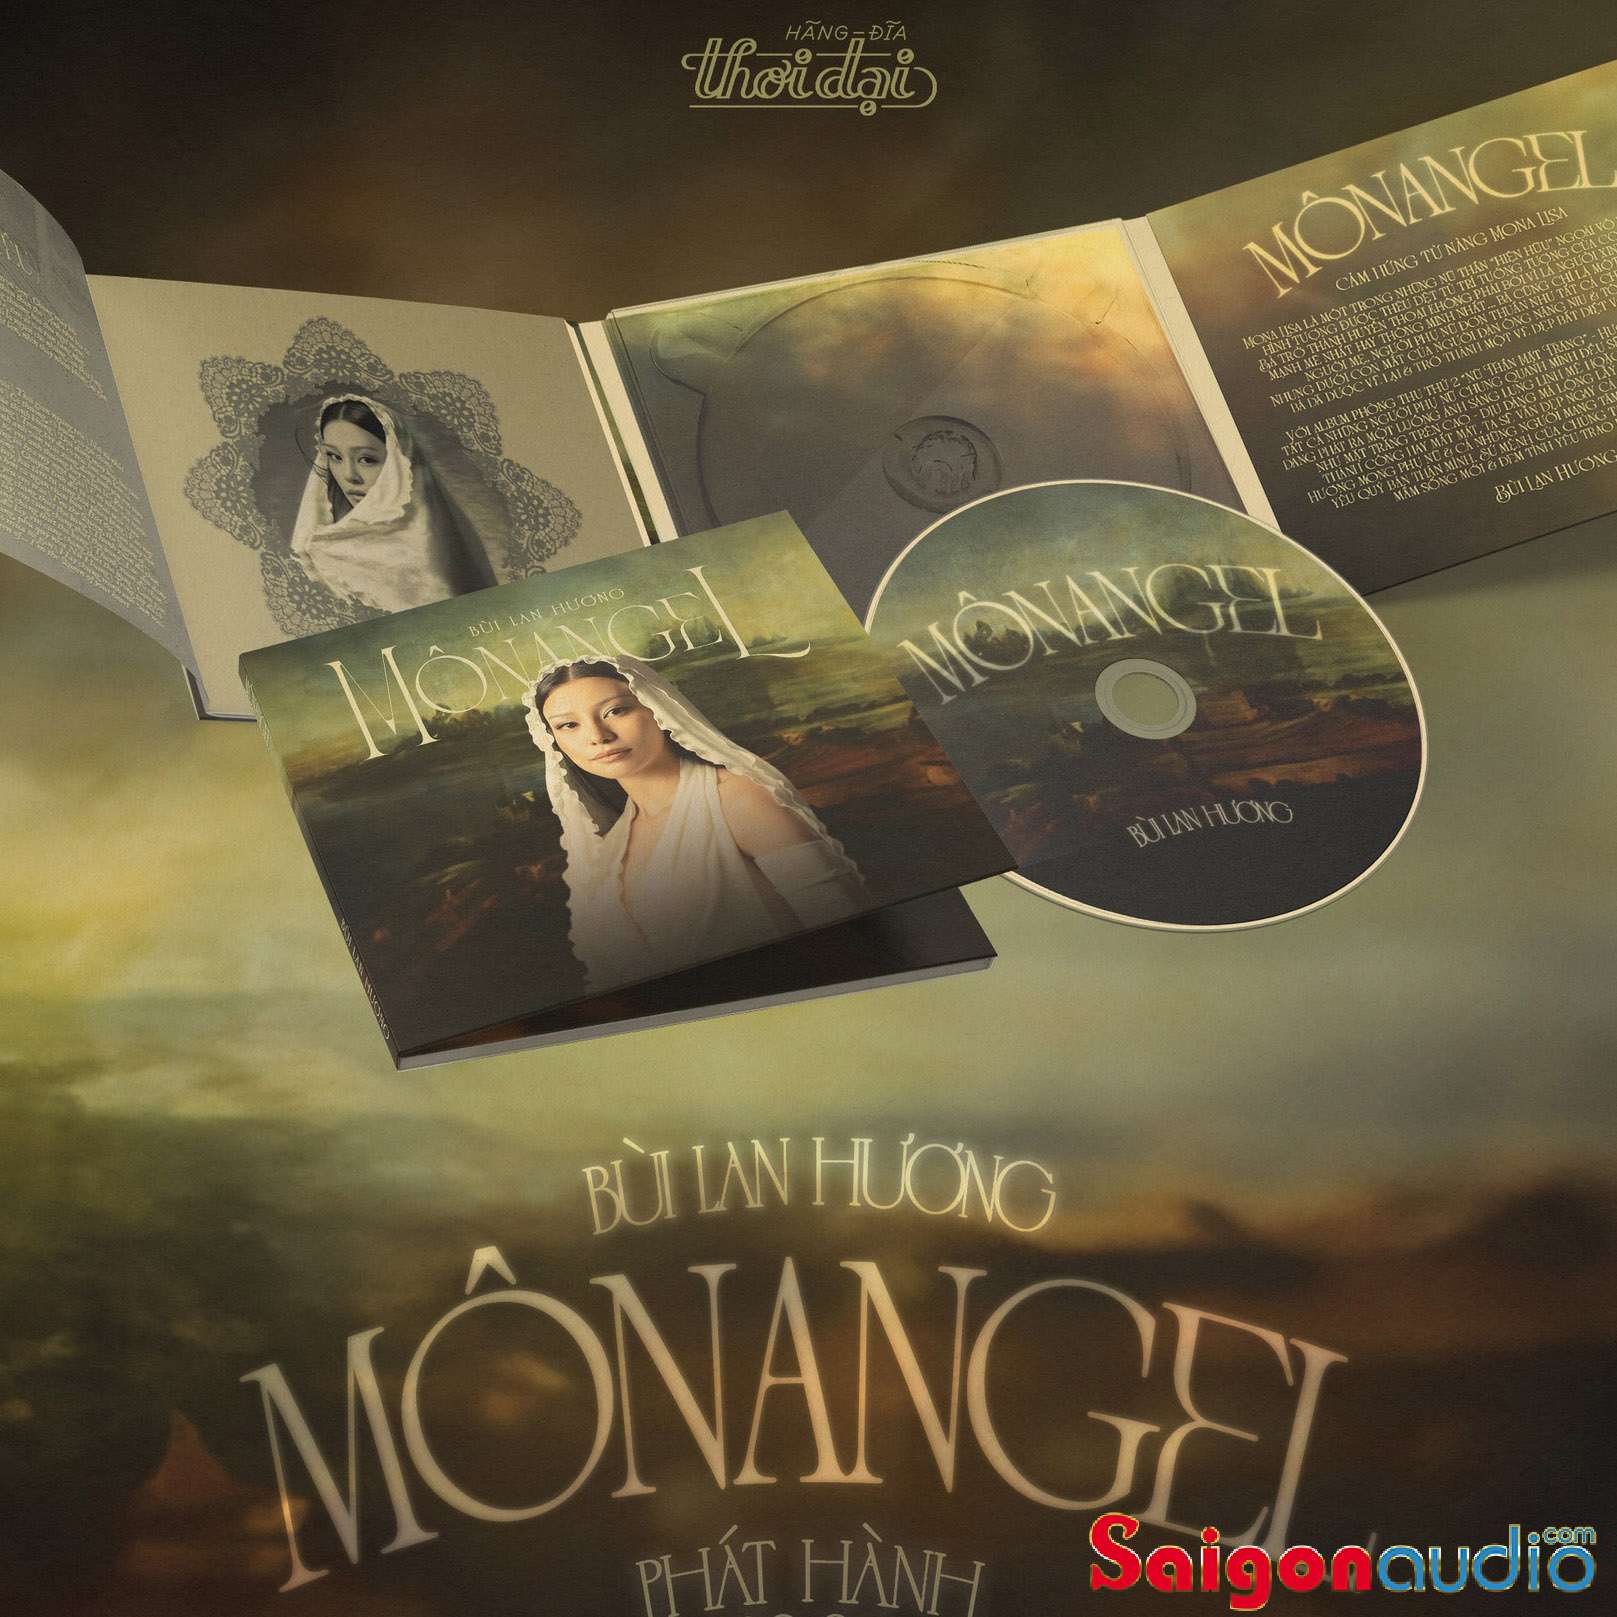 Đĩa CD gốc Bùi Lan Hương - Nữ Thần Mặt Trăng (Monoangel) (Free ship khi mua 2 đĩa CD cùng hoặc khác loại)